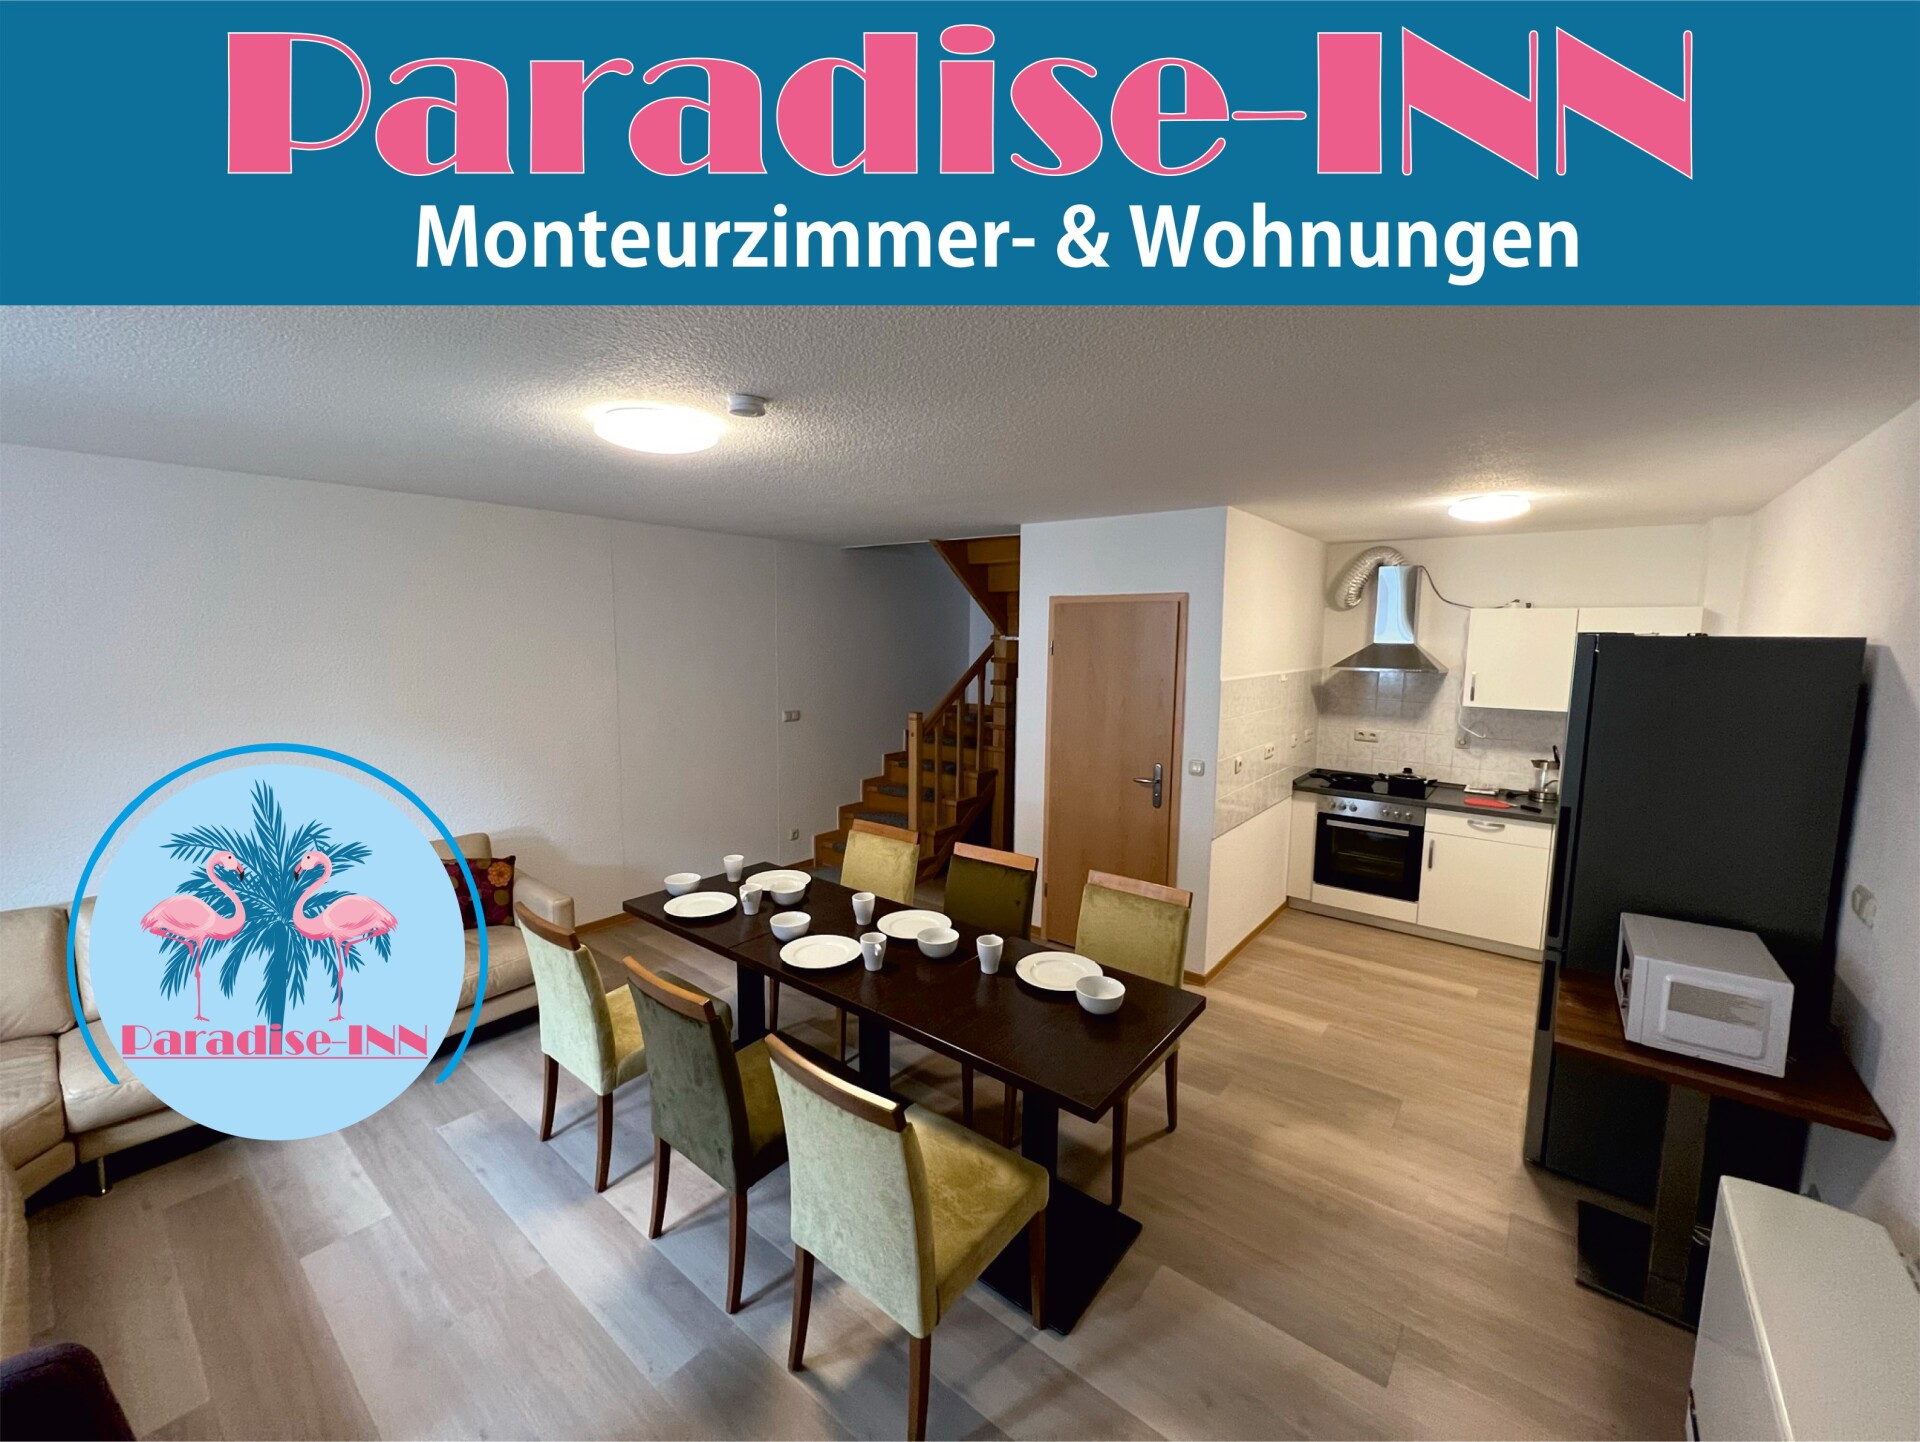 Monteurwohnung Paradise INN Hannes Haedecke 39175 Gommern 167646036663ecc14e148ad